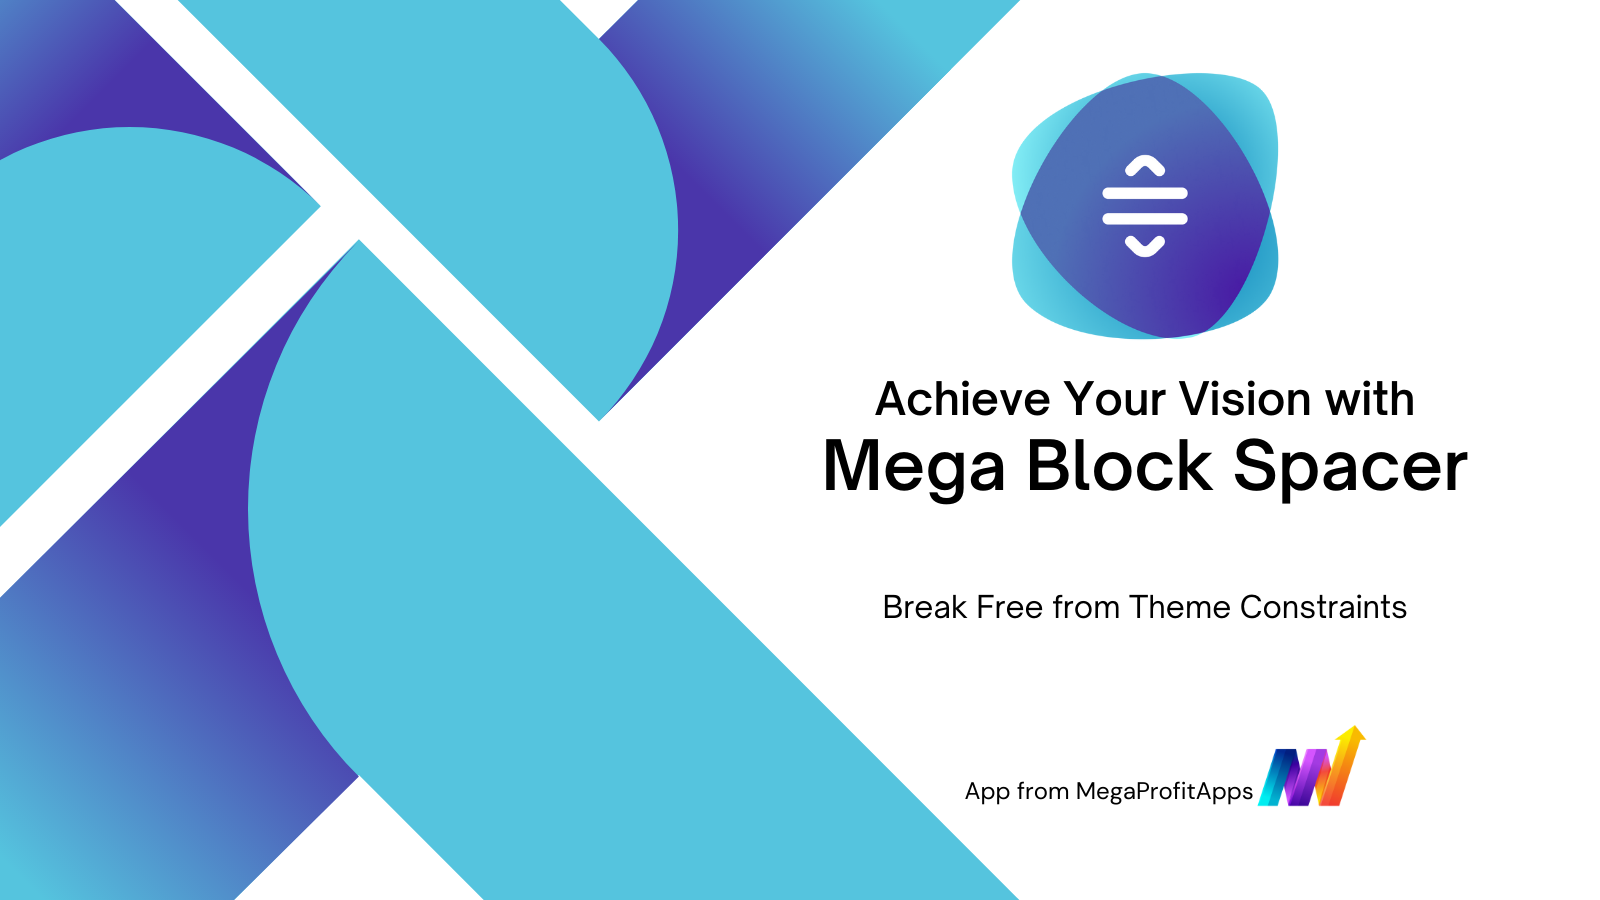 Mega Block Spacer - Befri dig selv fra tema begrænsninger